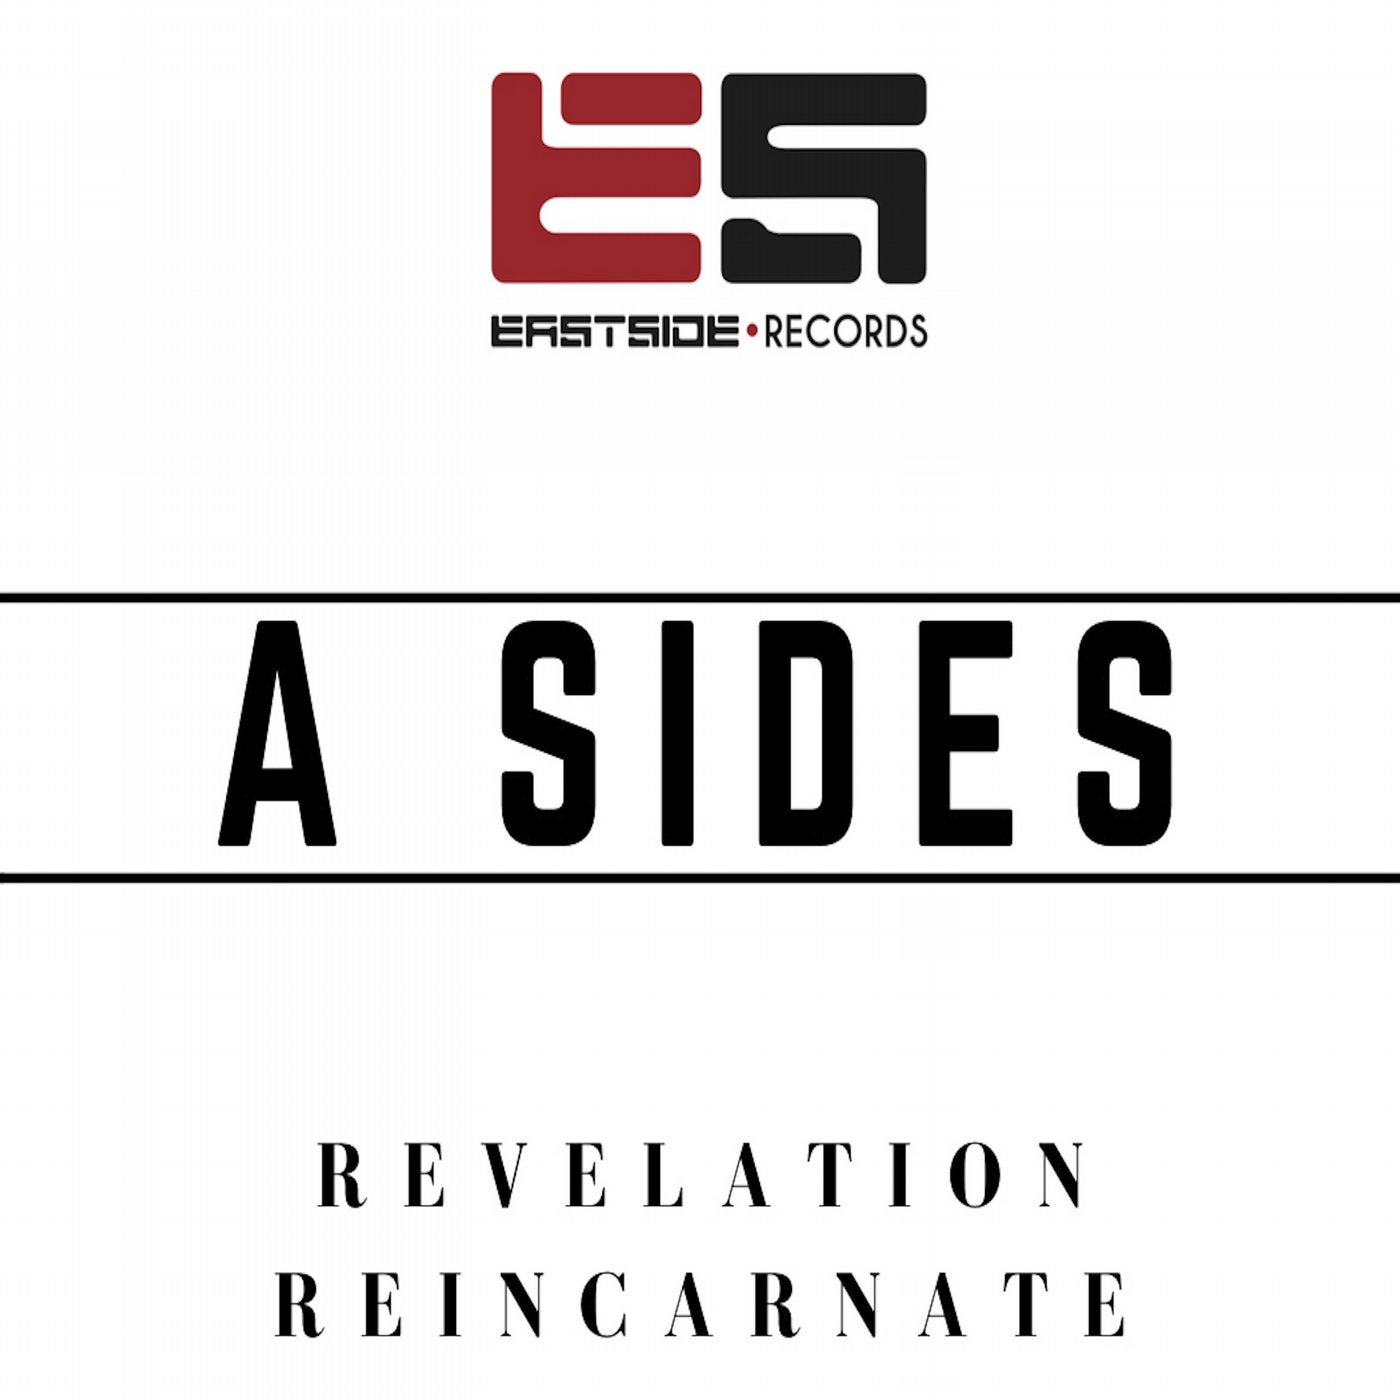 Reincarnate / Revelation